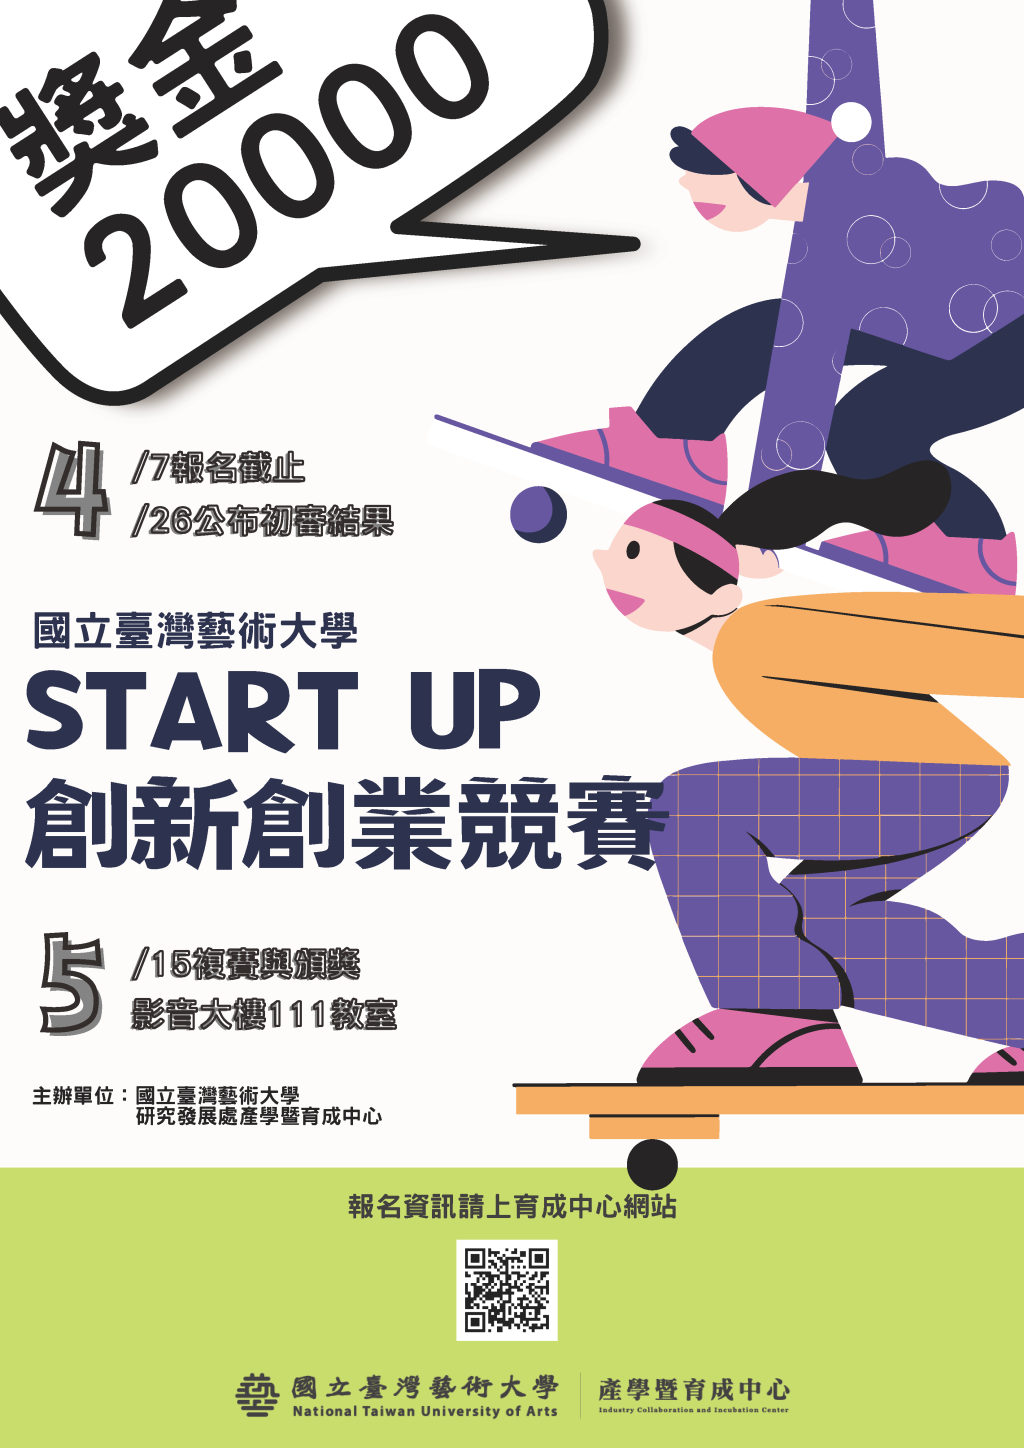 【轉知】國立臺灣藝術大學辦理111學年度「Start Up 創新創業競賽」活動